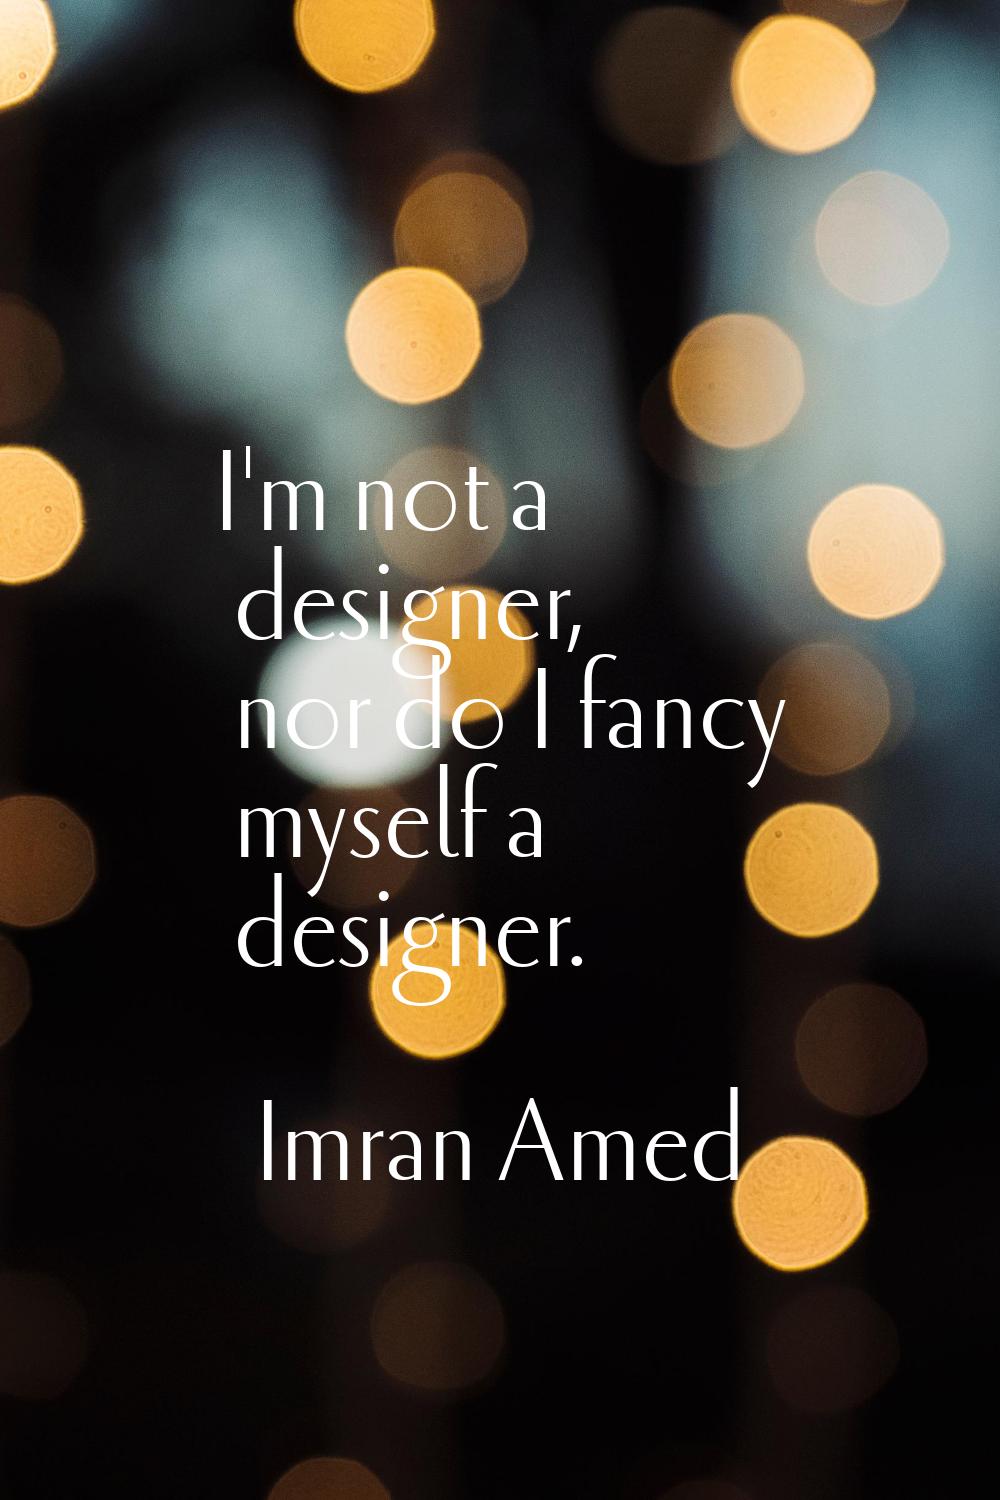 I'm not a designer, nor do I fancy myself a designer.